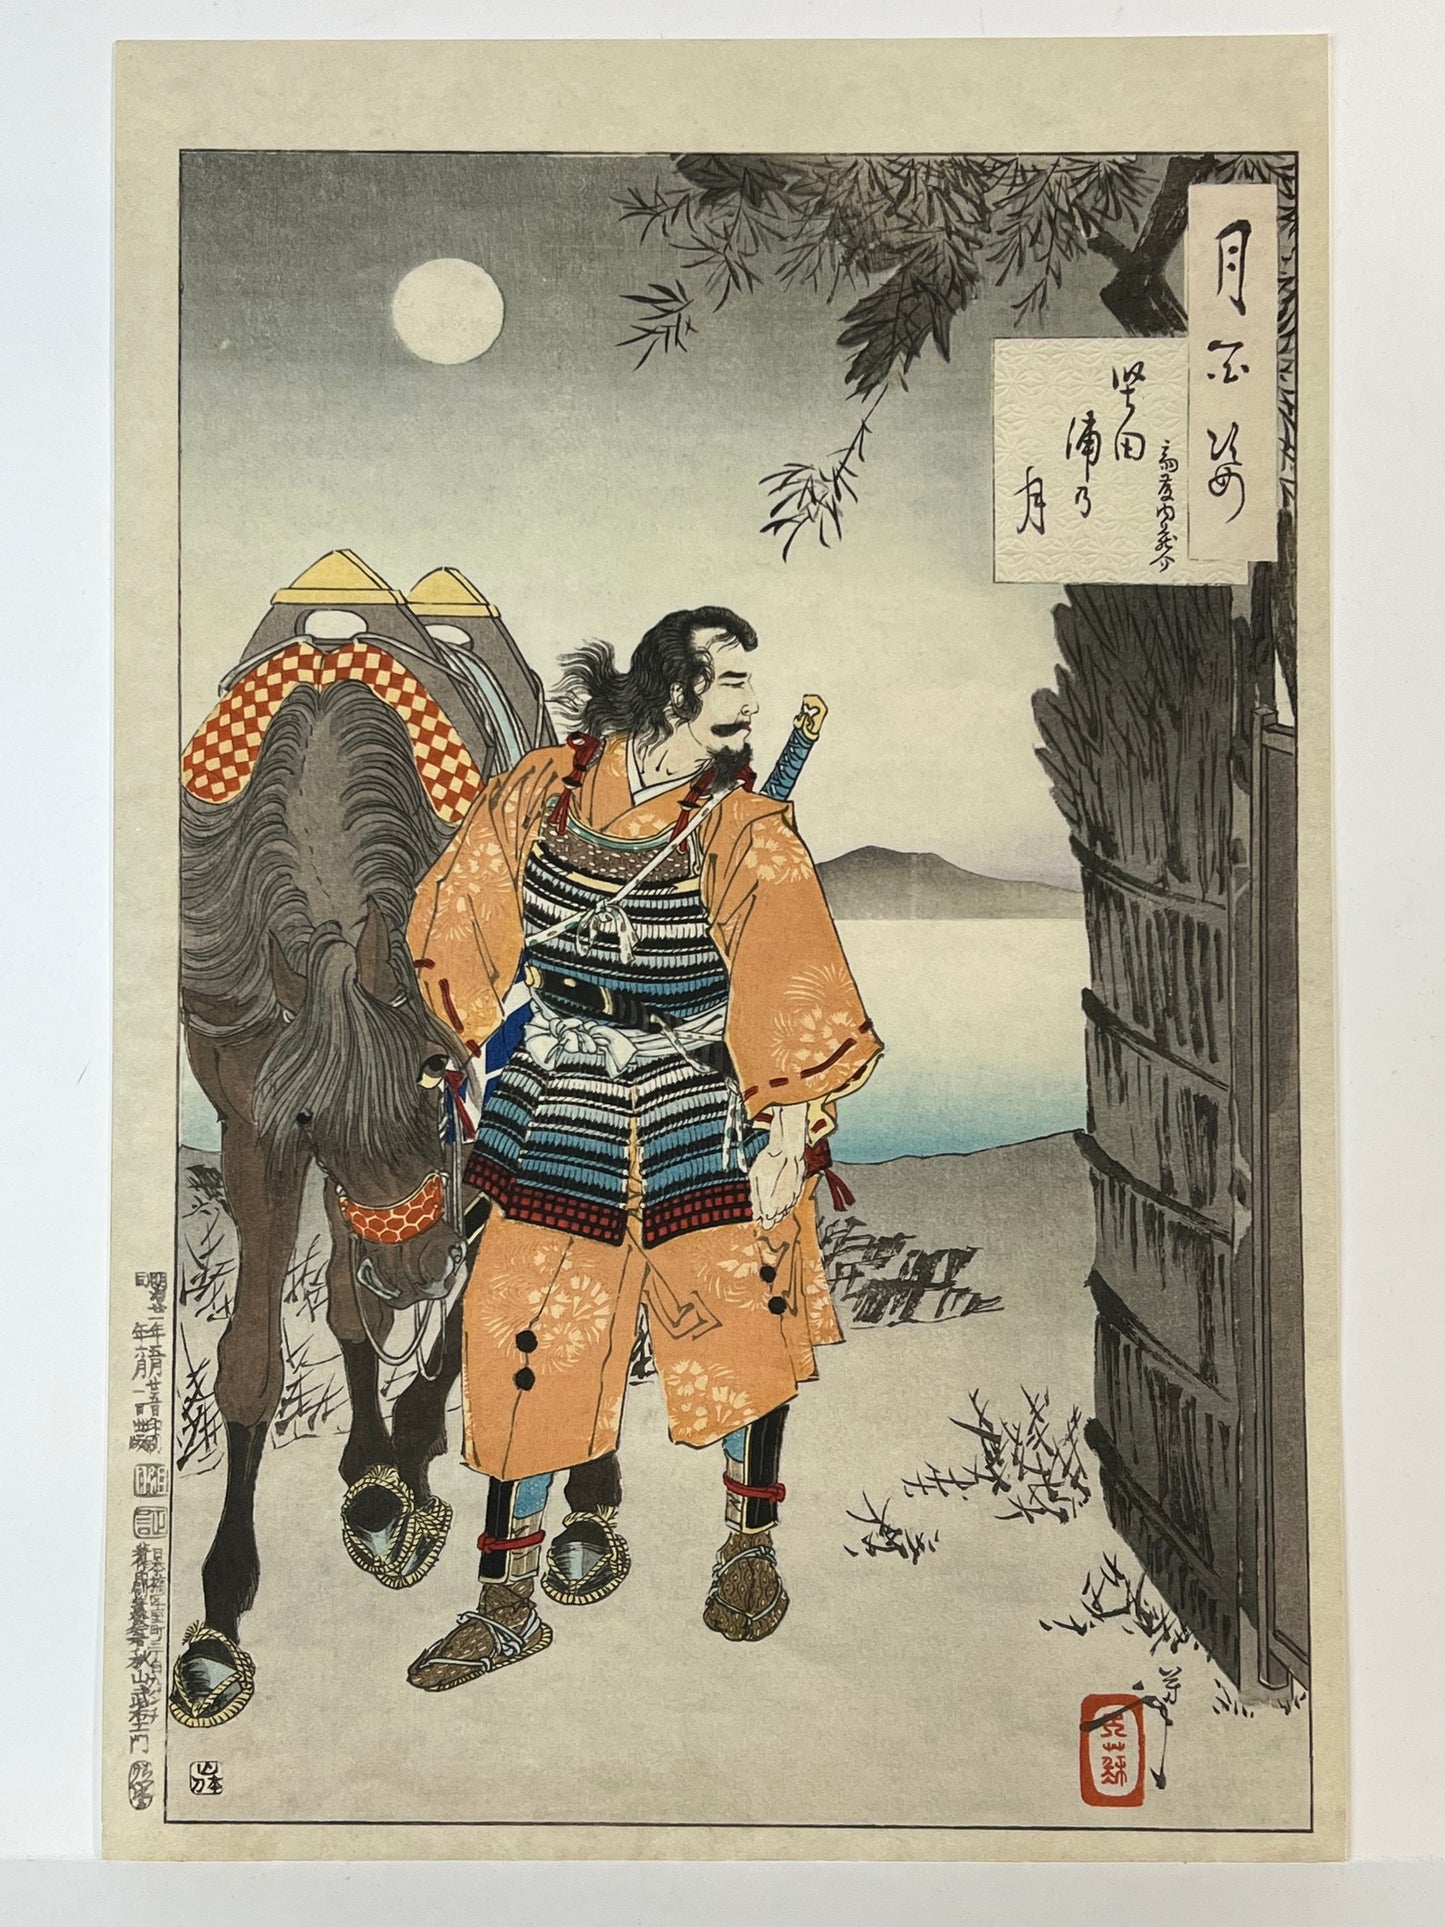 Yoshitoshi Woodblock Print "Katada Bay Moon" Bay 100 Views of the Moon